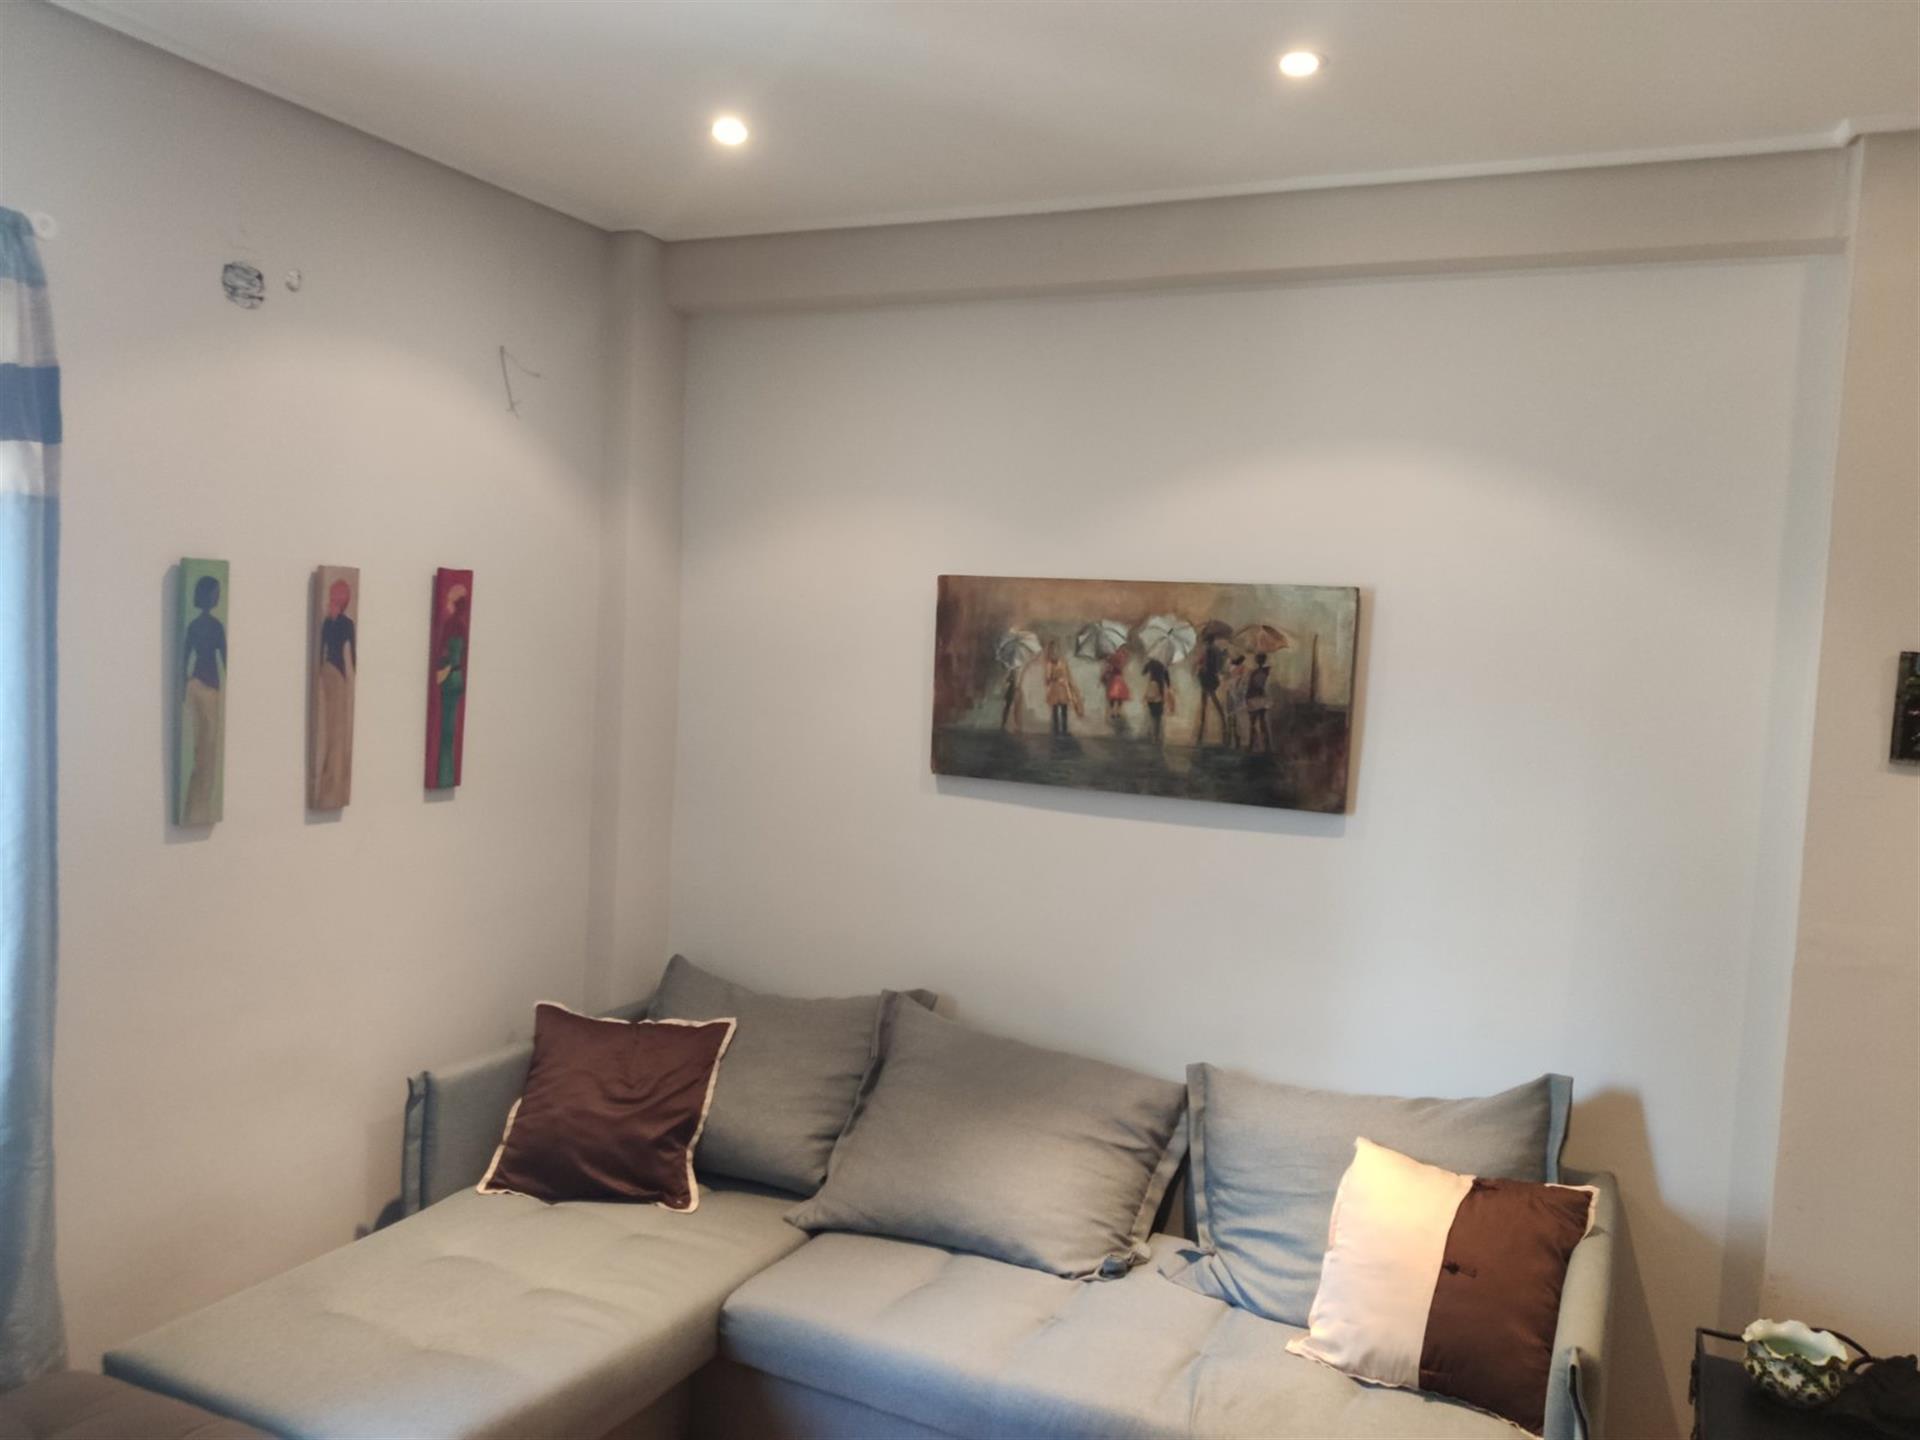 Αγιοσ Αρτεμιοσ - Παγκρατι πωλείται διαμέρισμα 52 τ.μ., 4ου ορόφου 